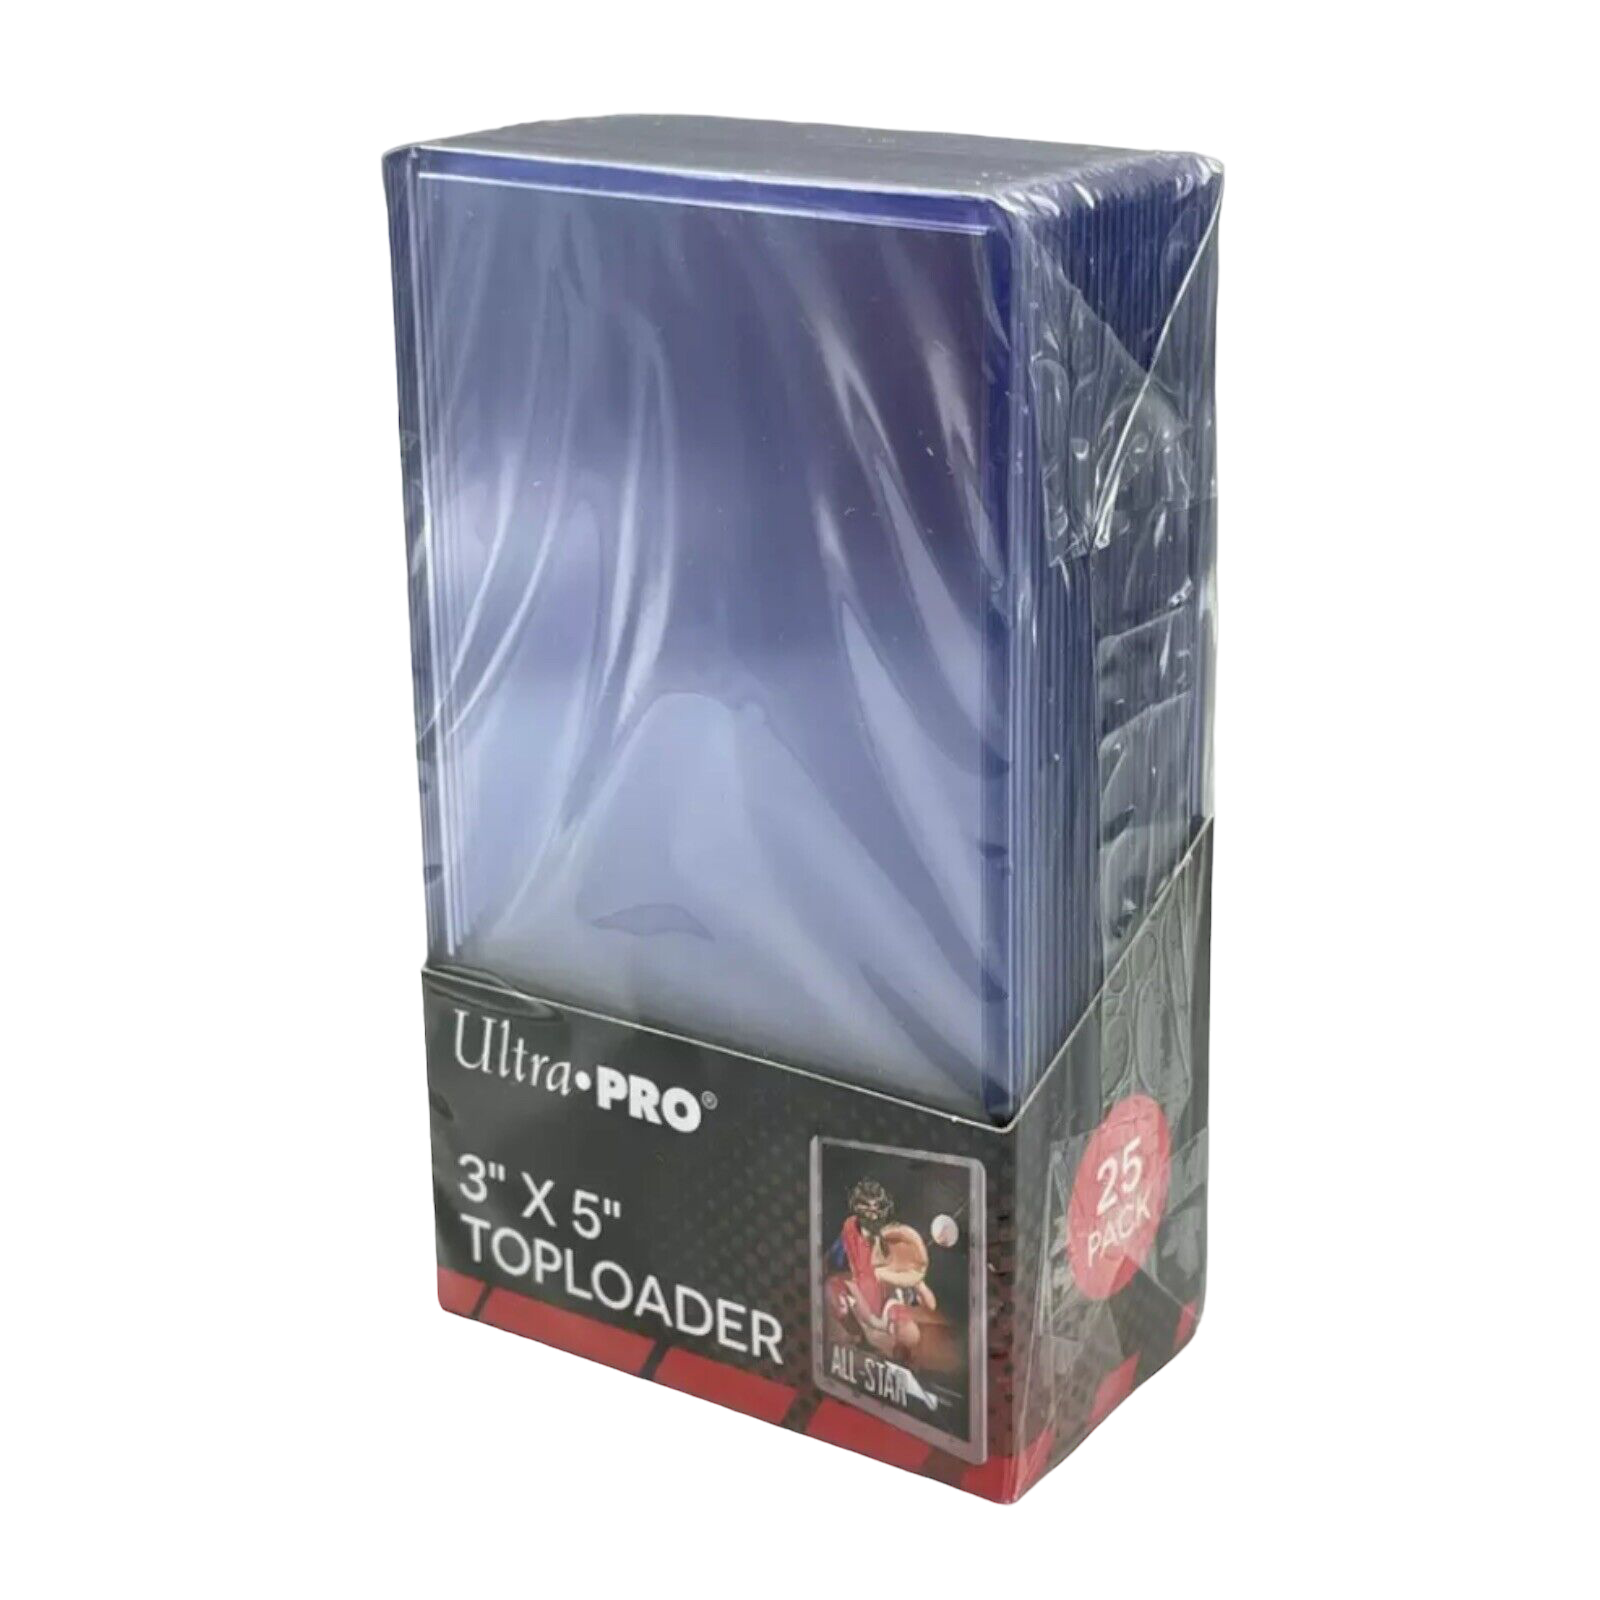 Regular Toploader Ultra Pro 3x5 - Near07 Store